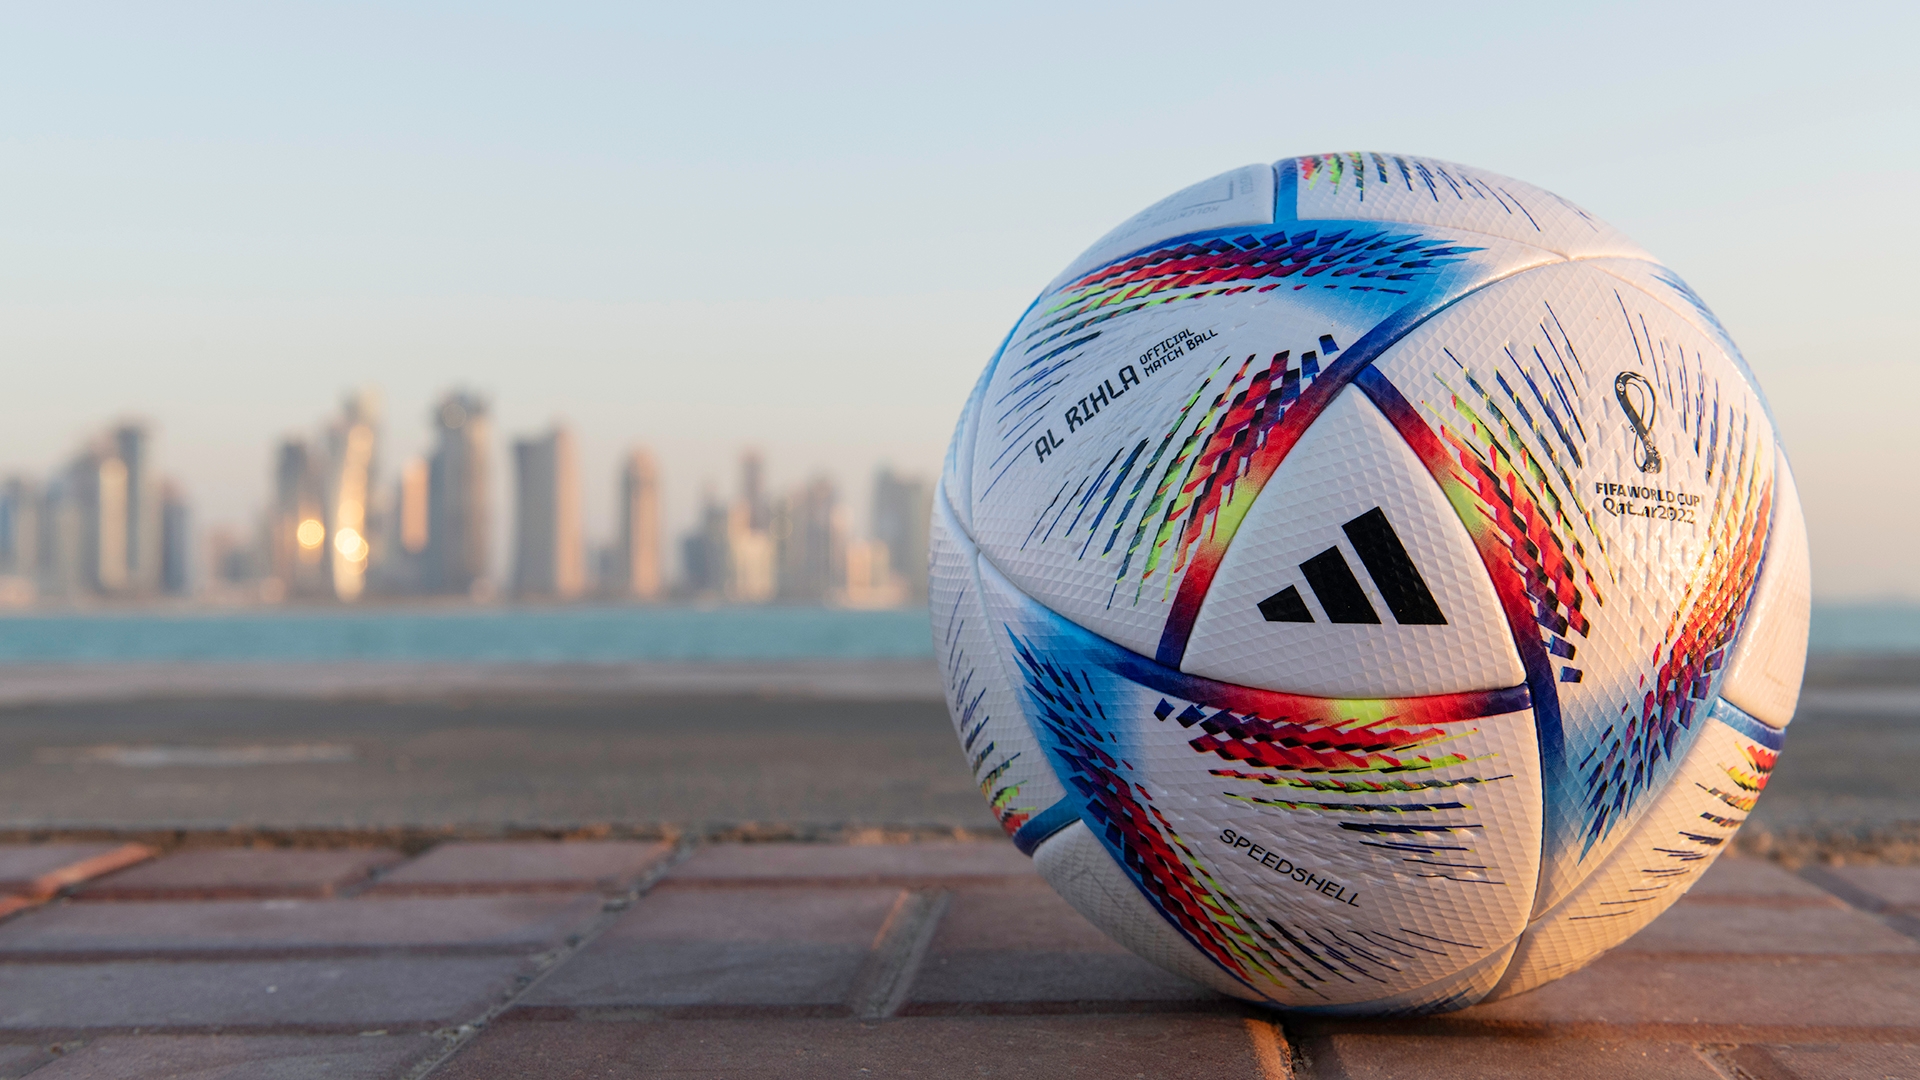 Adidas unveils 'fastest in flight' World Cup match ball Al Rihla for Qatar 2022